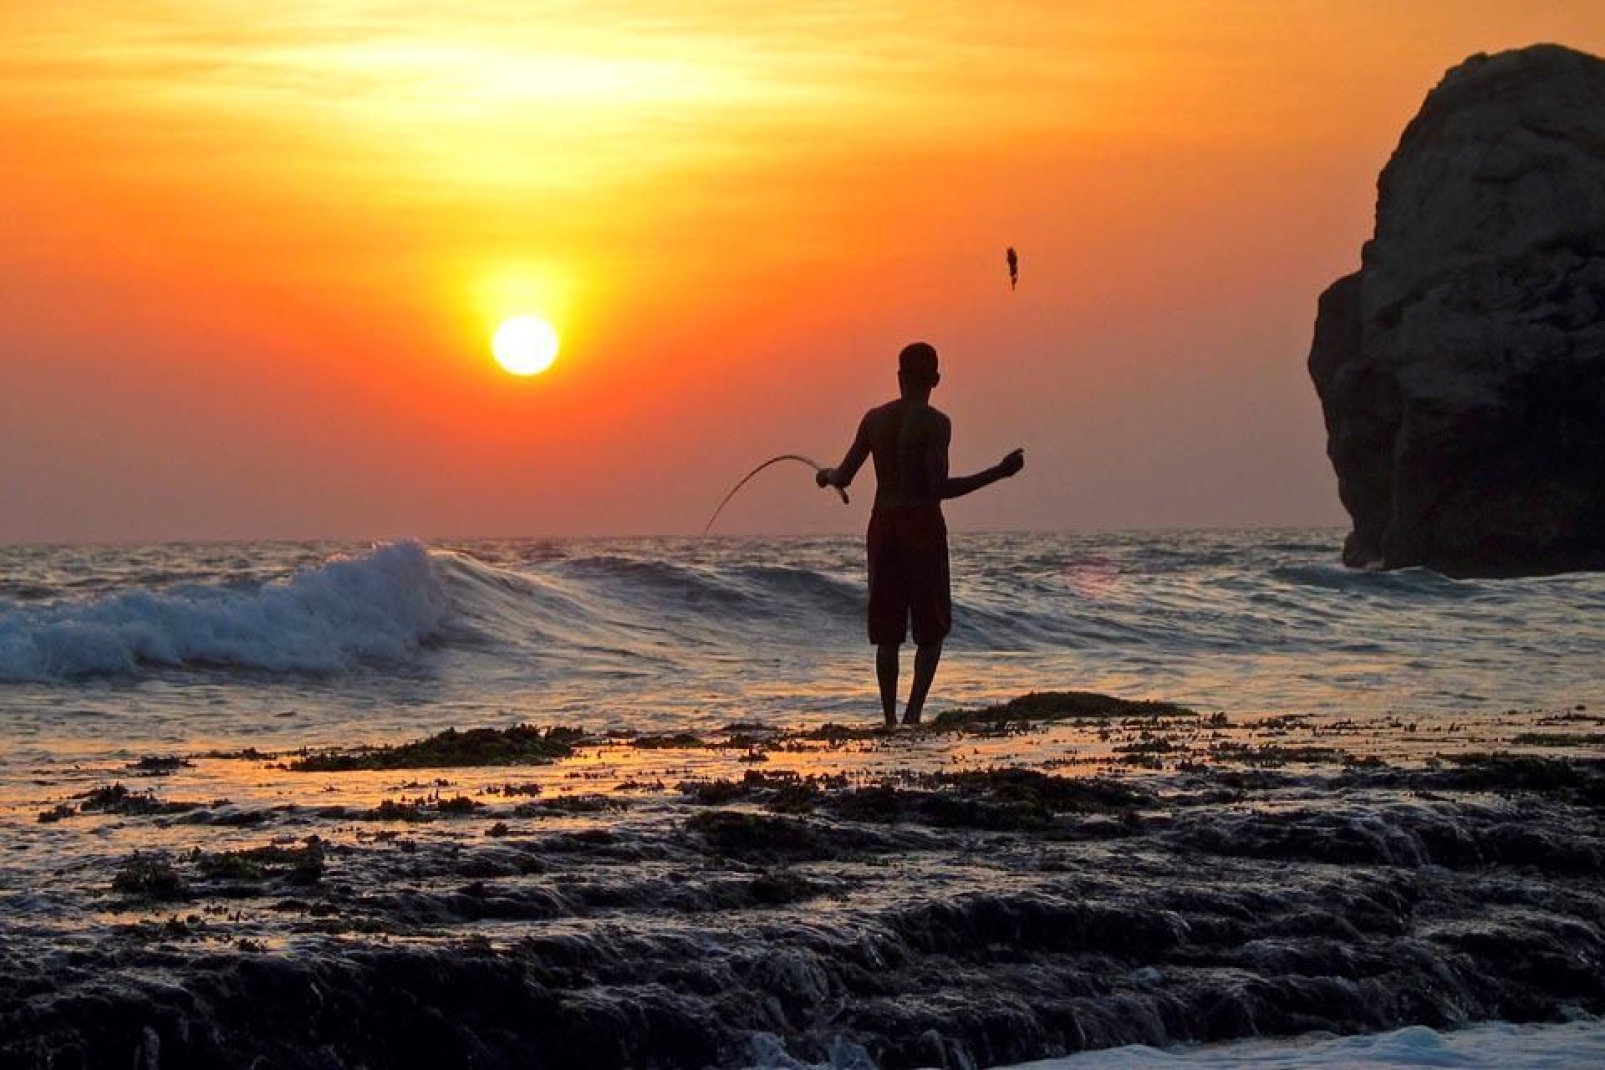 Ein Fischer wirft seine Angel aus und geniet den wunderschnen Sonnenuntergang vor Einbruch der Nacht.